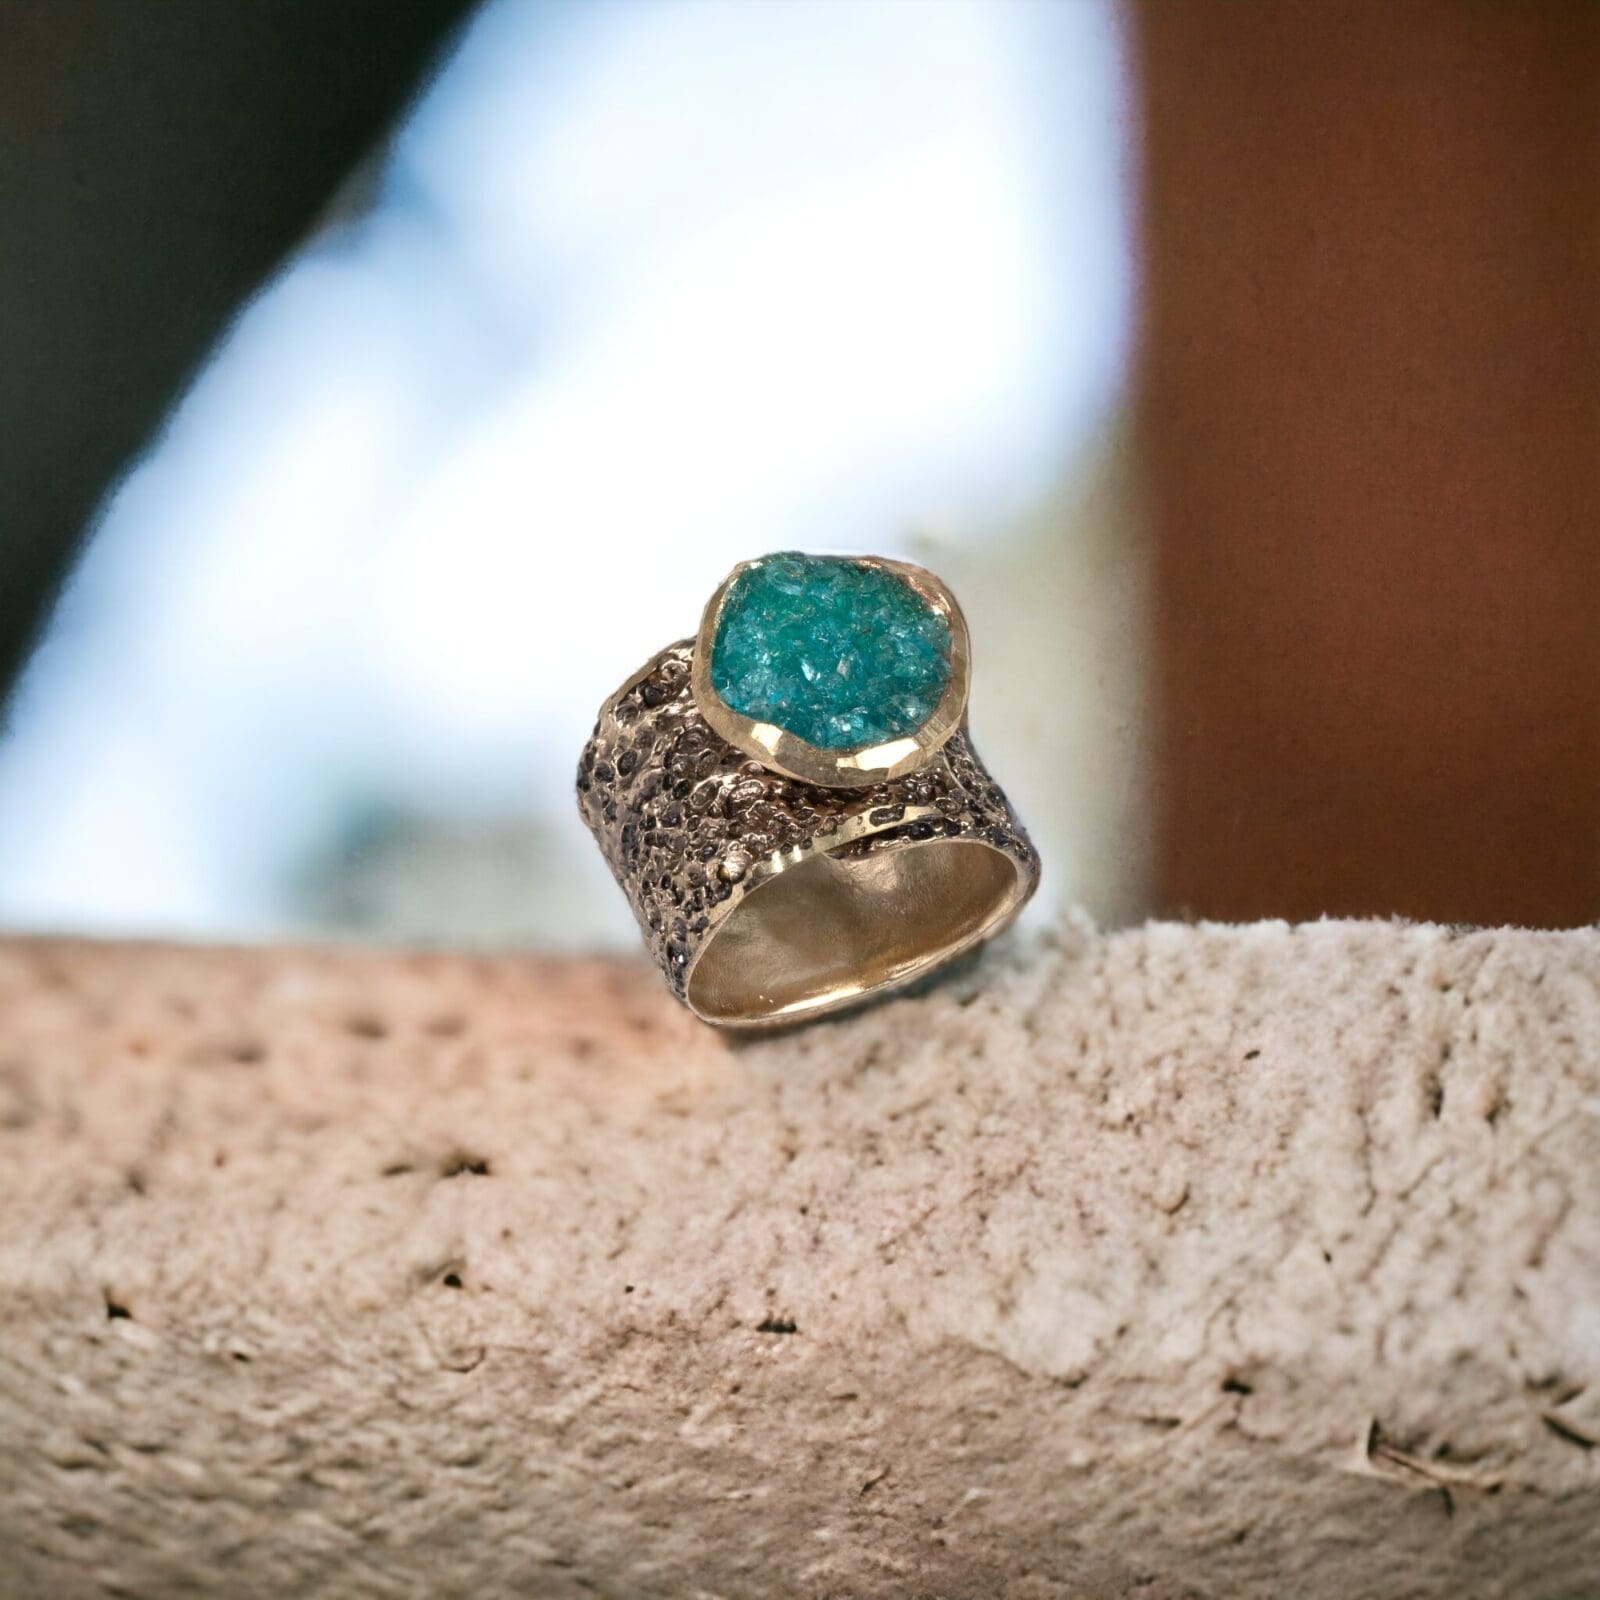 Χειροποίητο δαχτυλίδι από διαμανταρισμένο ορείχαλκο (σε μπεζ/μαύρη απόχρωση) και γαλαζοπράσινους κρυστάλλους aquamarine